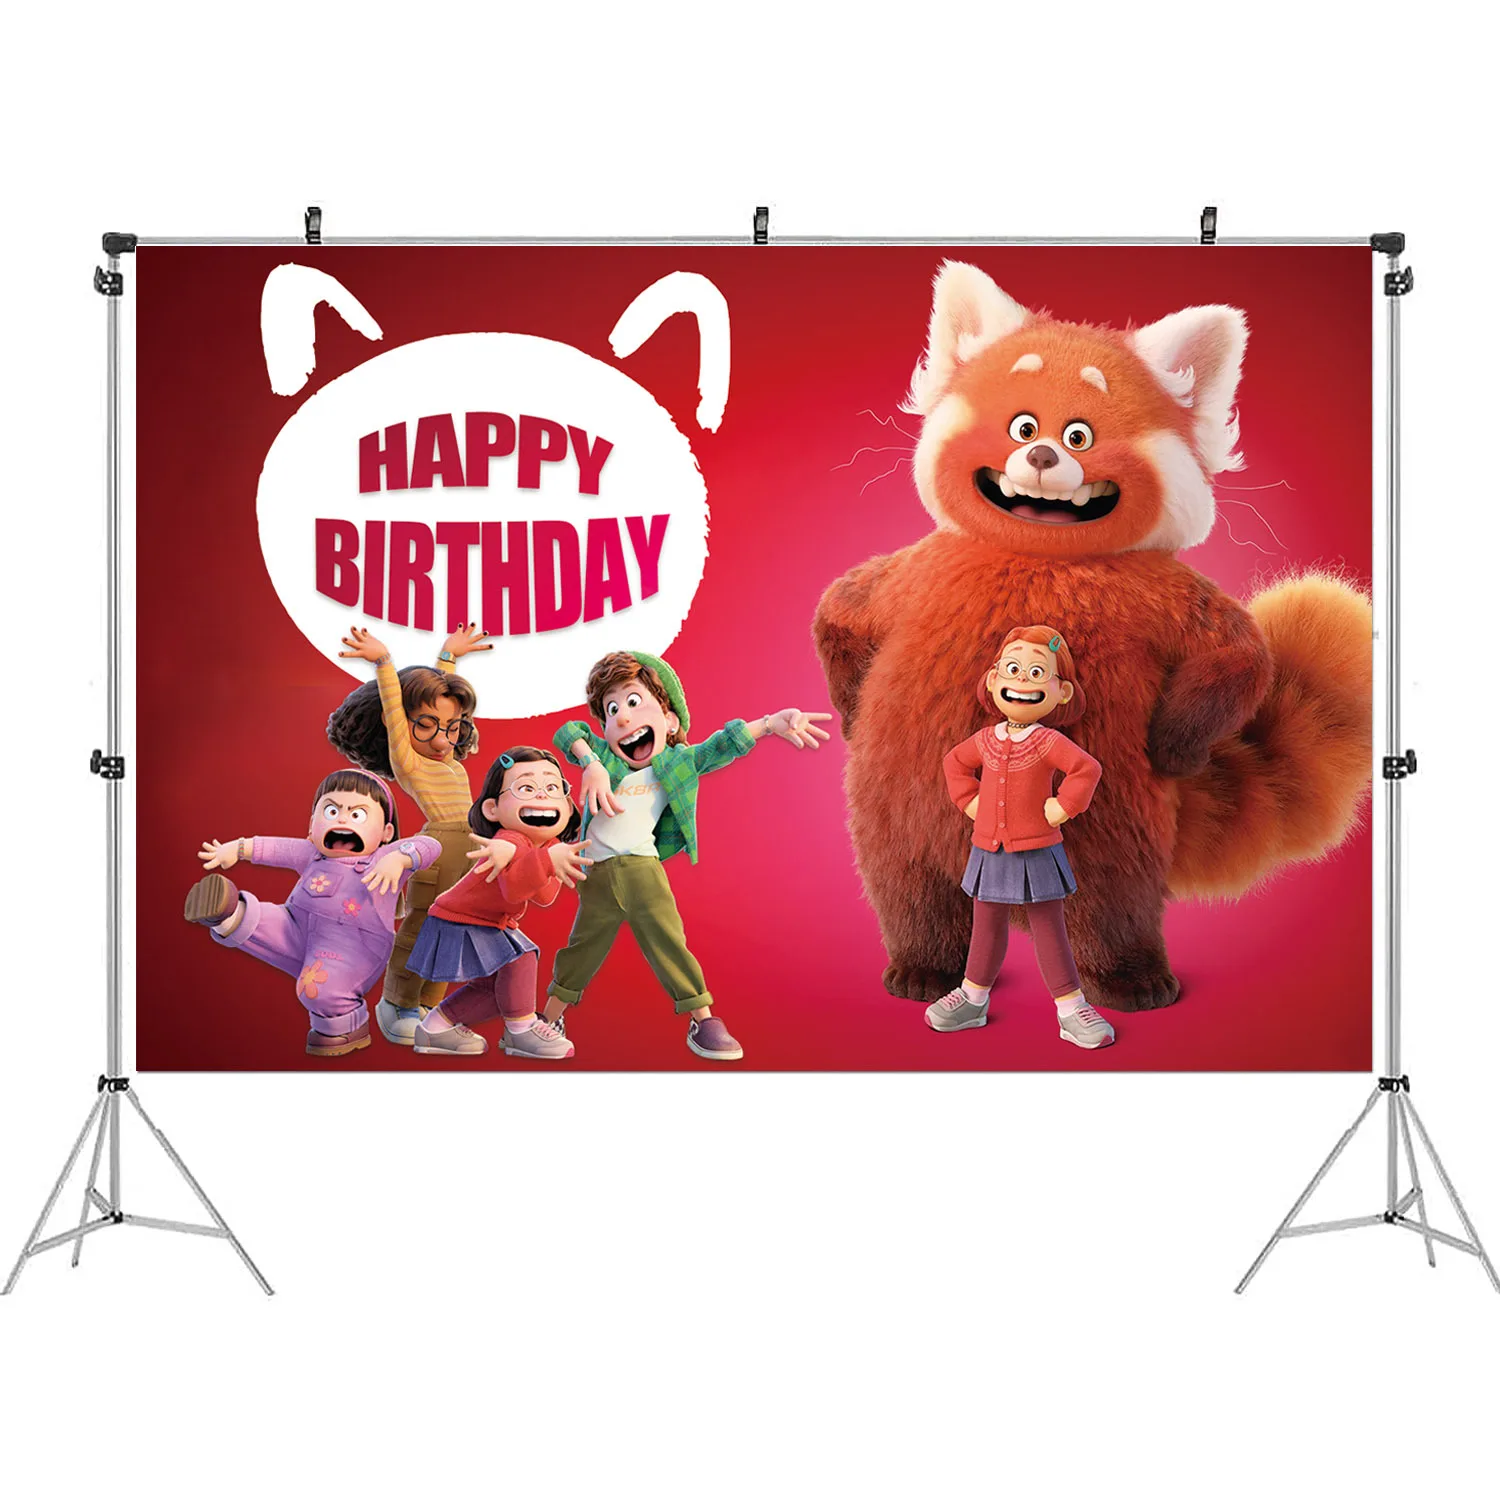 Với chủ đề Turning Red, trang trí tiệc sinh nhật của bạn sẽ trở nên đặc biệt hơn bao giờ hết. Hãy cập nhật hình ảnh liên quan để thấy những ý tưởng trang trí độc đáo và phong phú cho bữa tiệc của bạn.